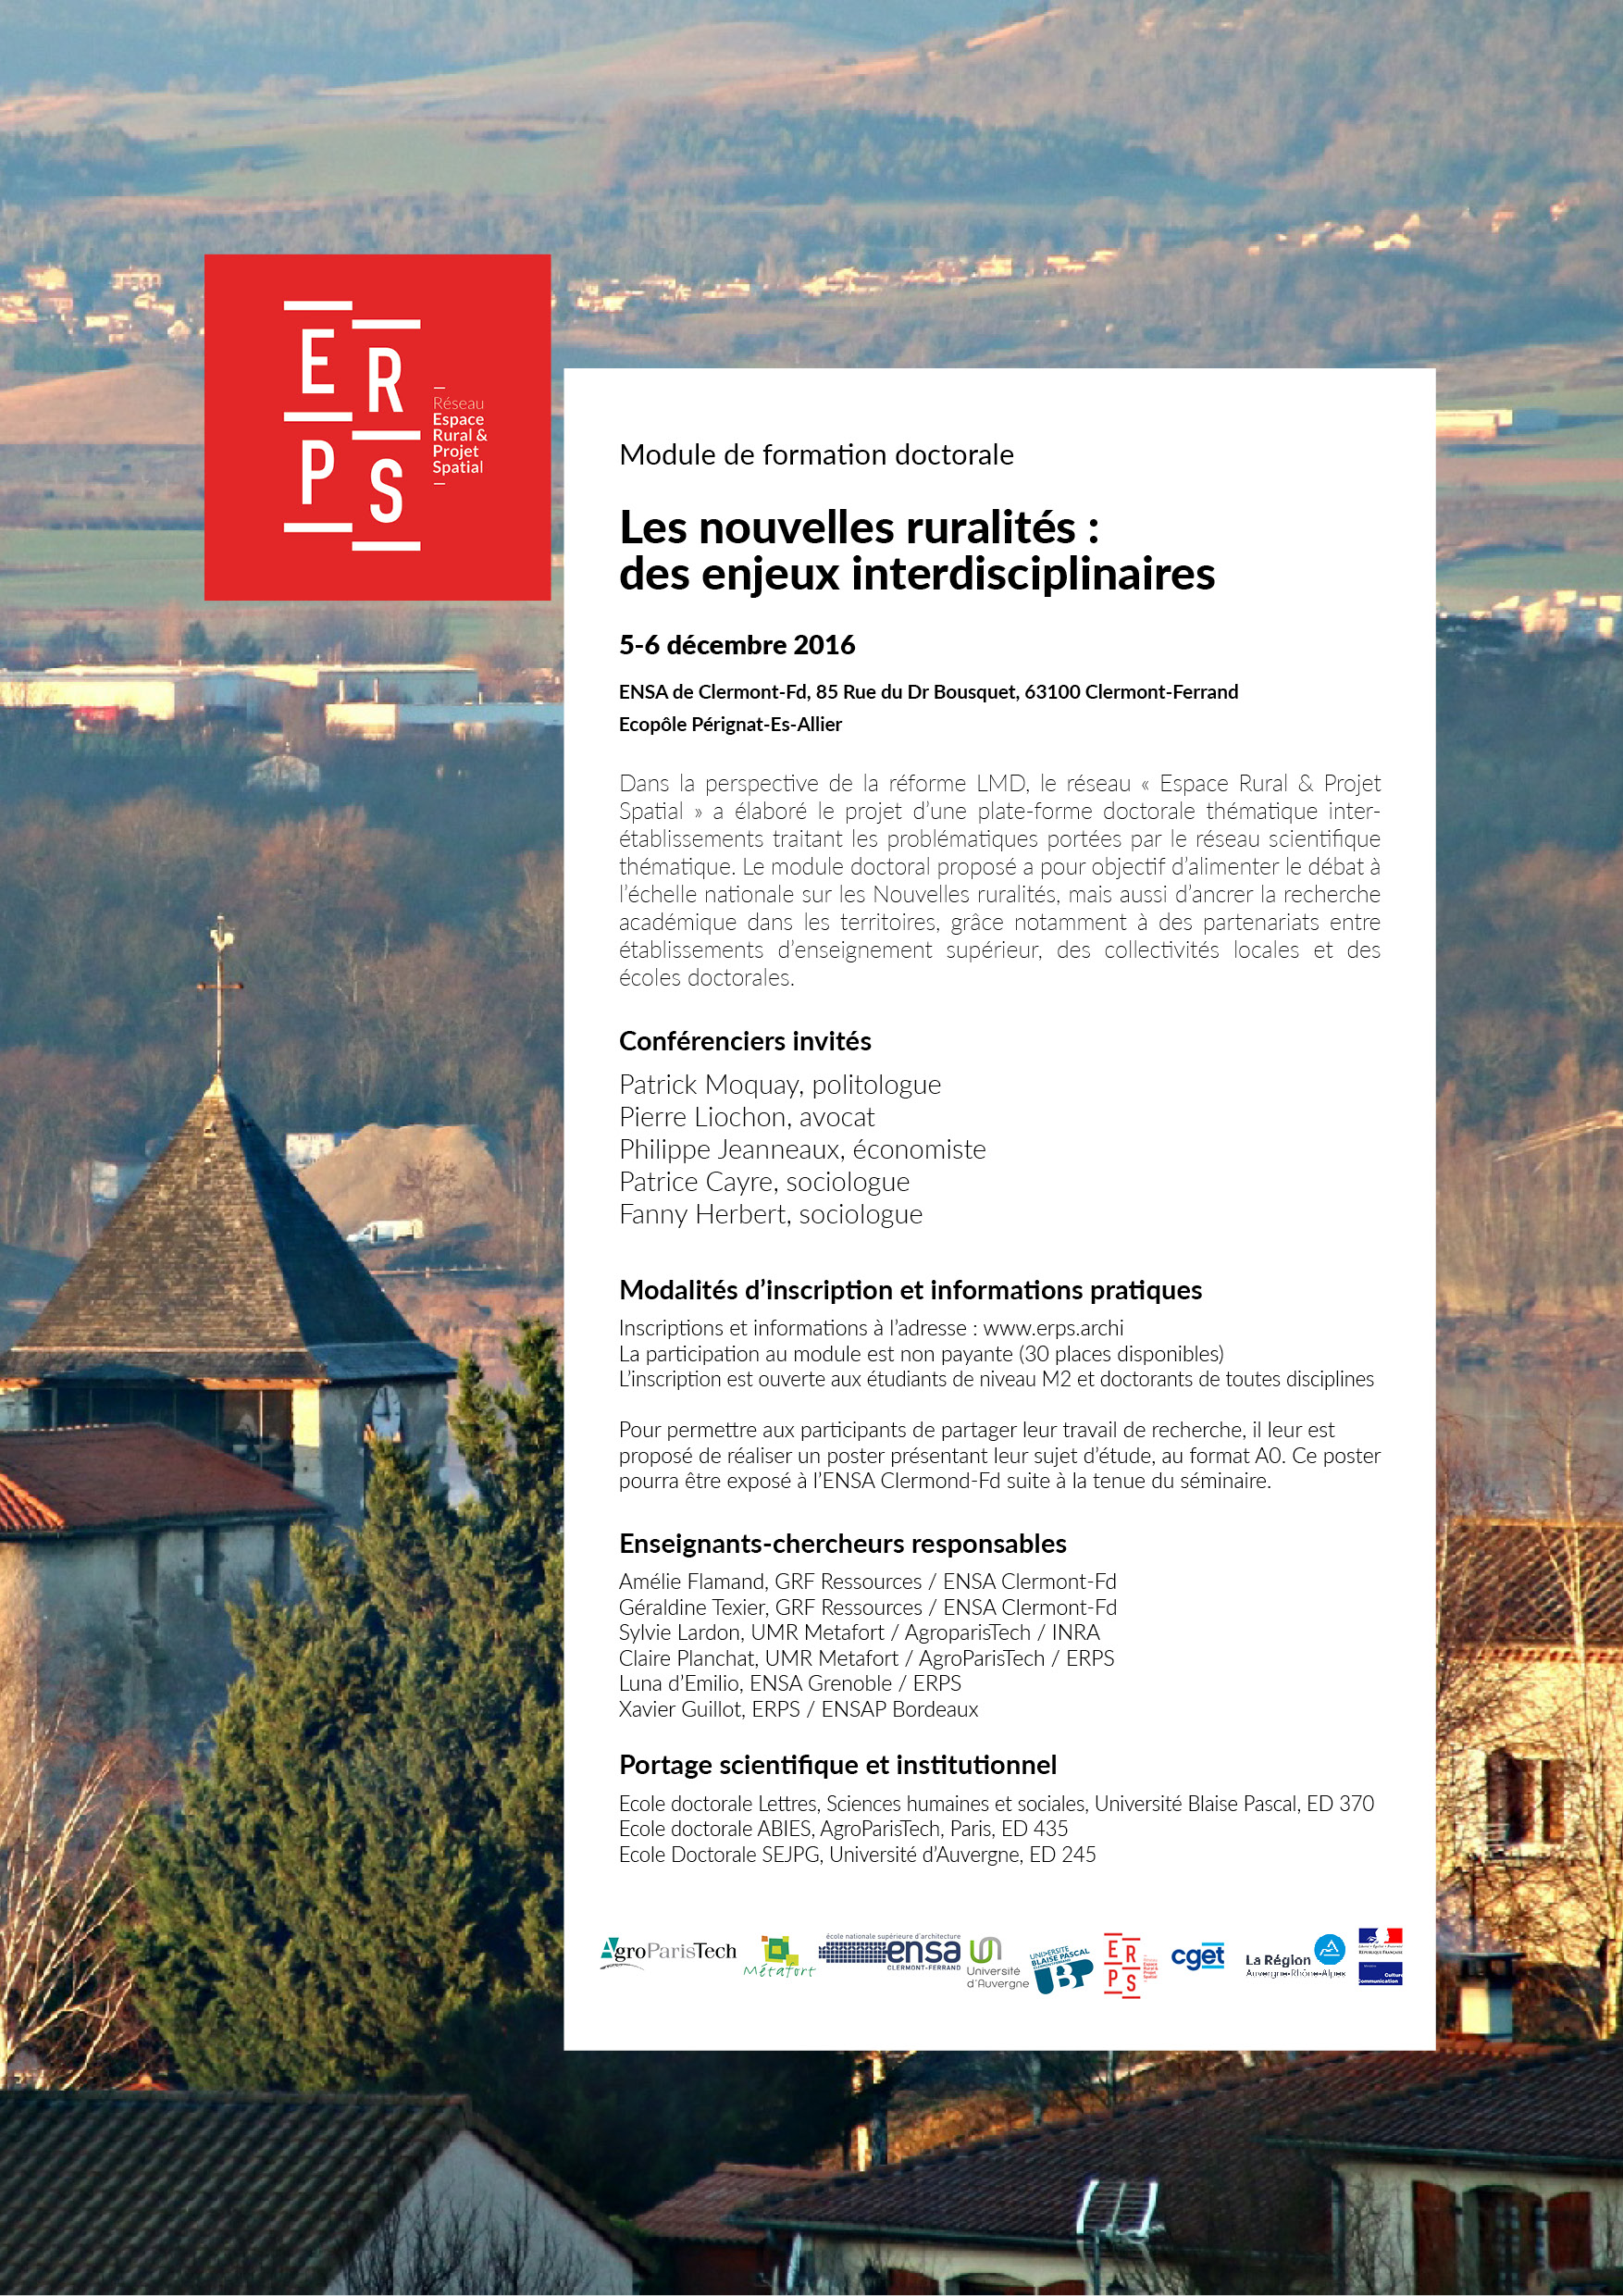 Module doctoral à Clermont-Fd 5-6 décembre : inscriptions et infos pratiques